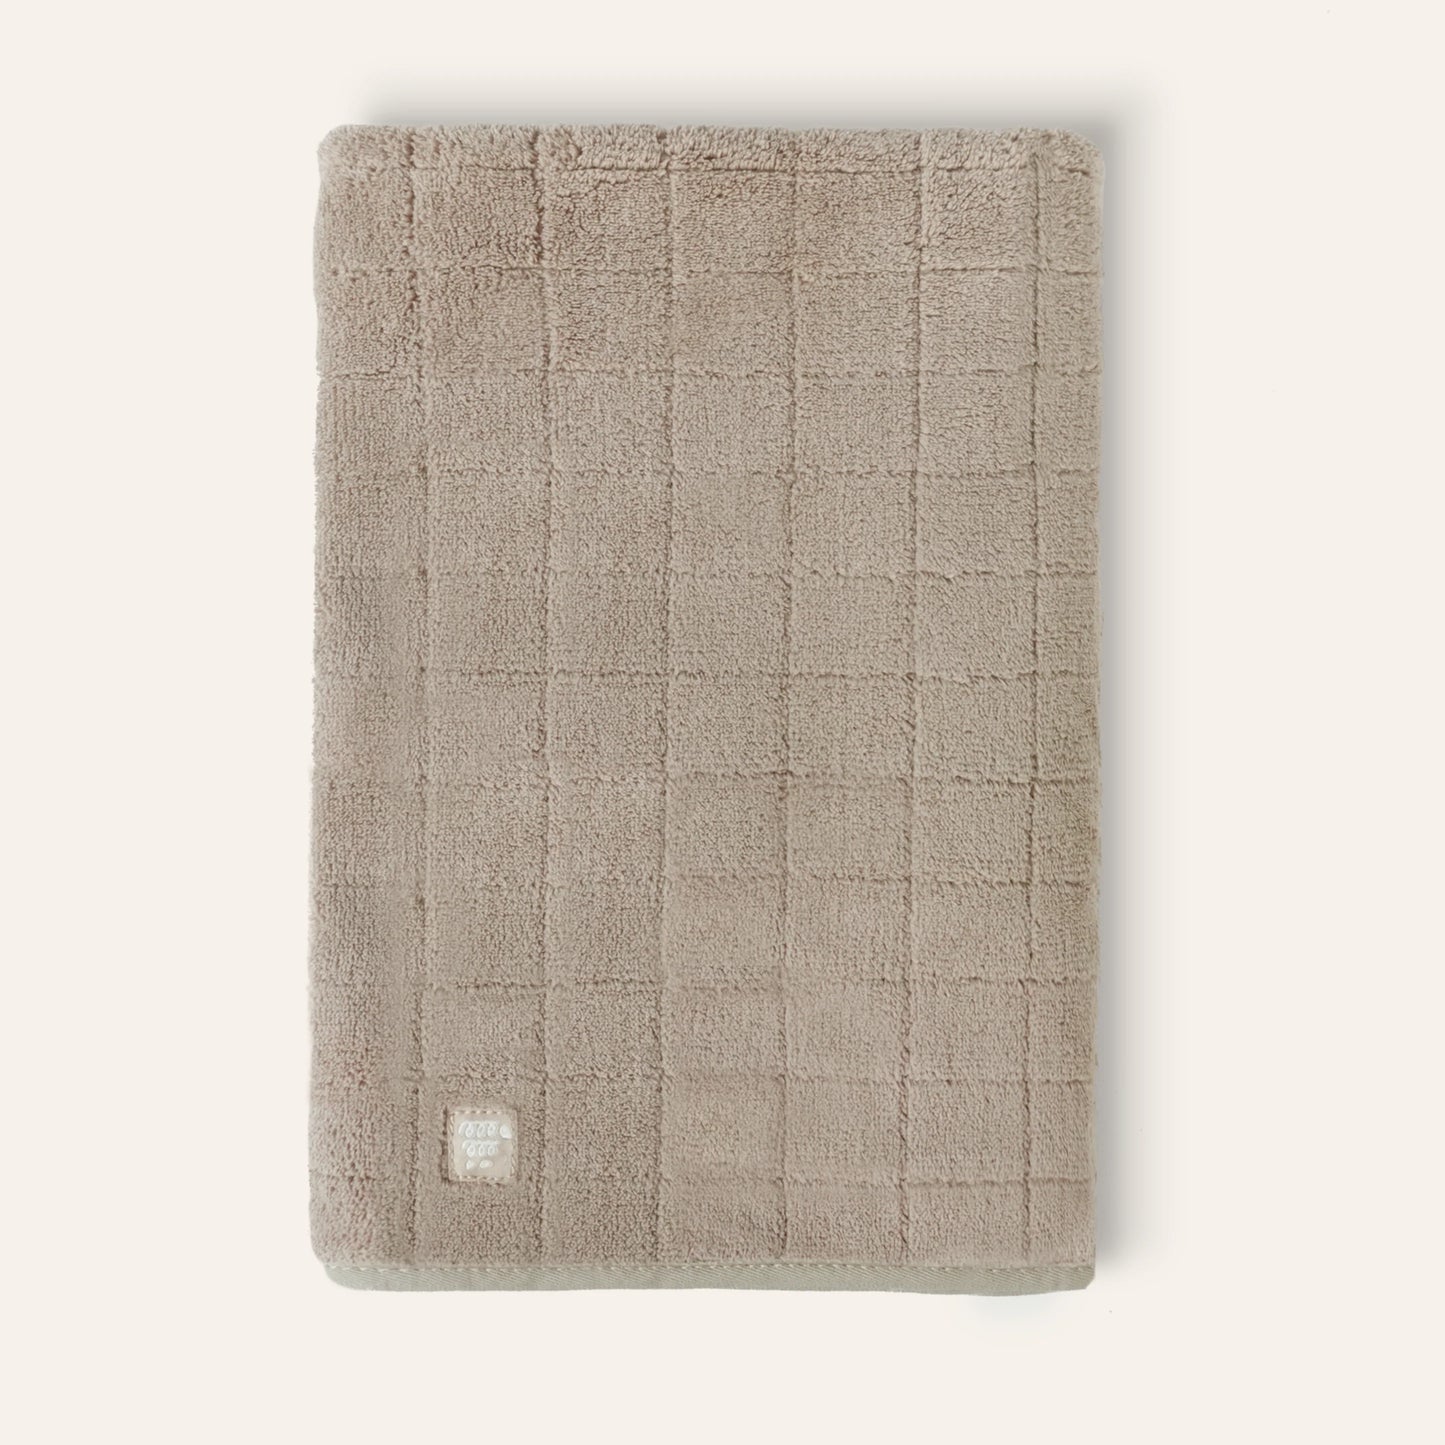 Baby Fleece Towel - Tan